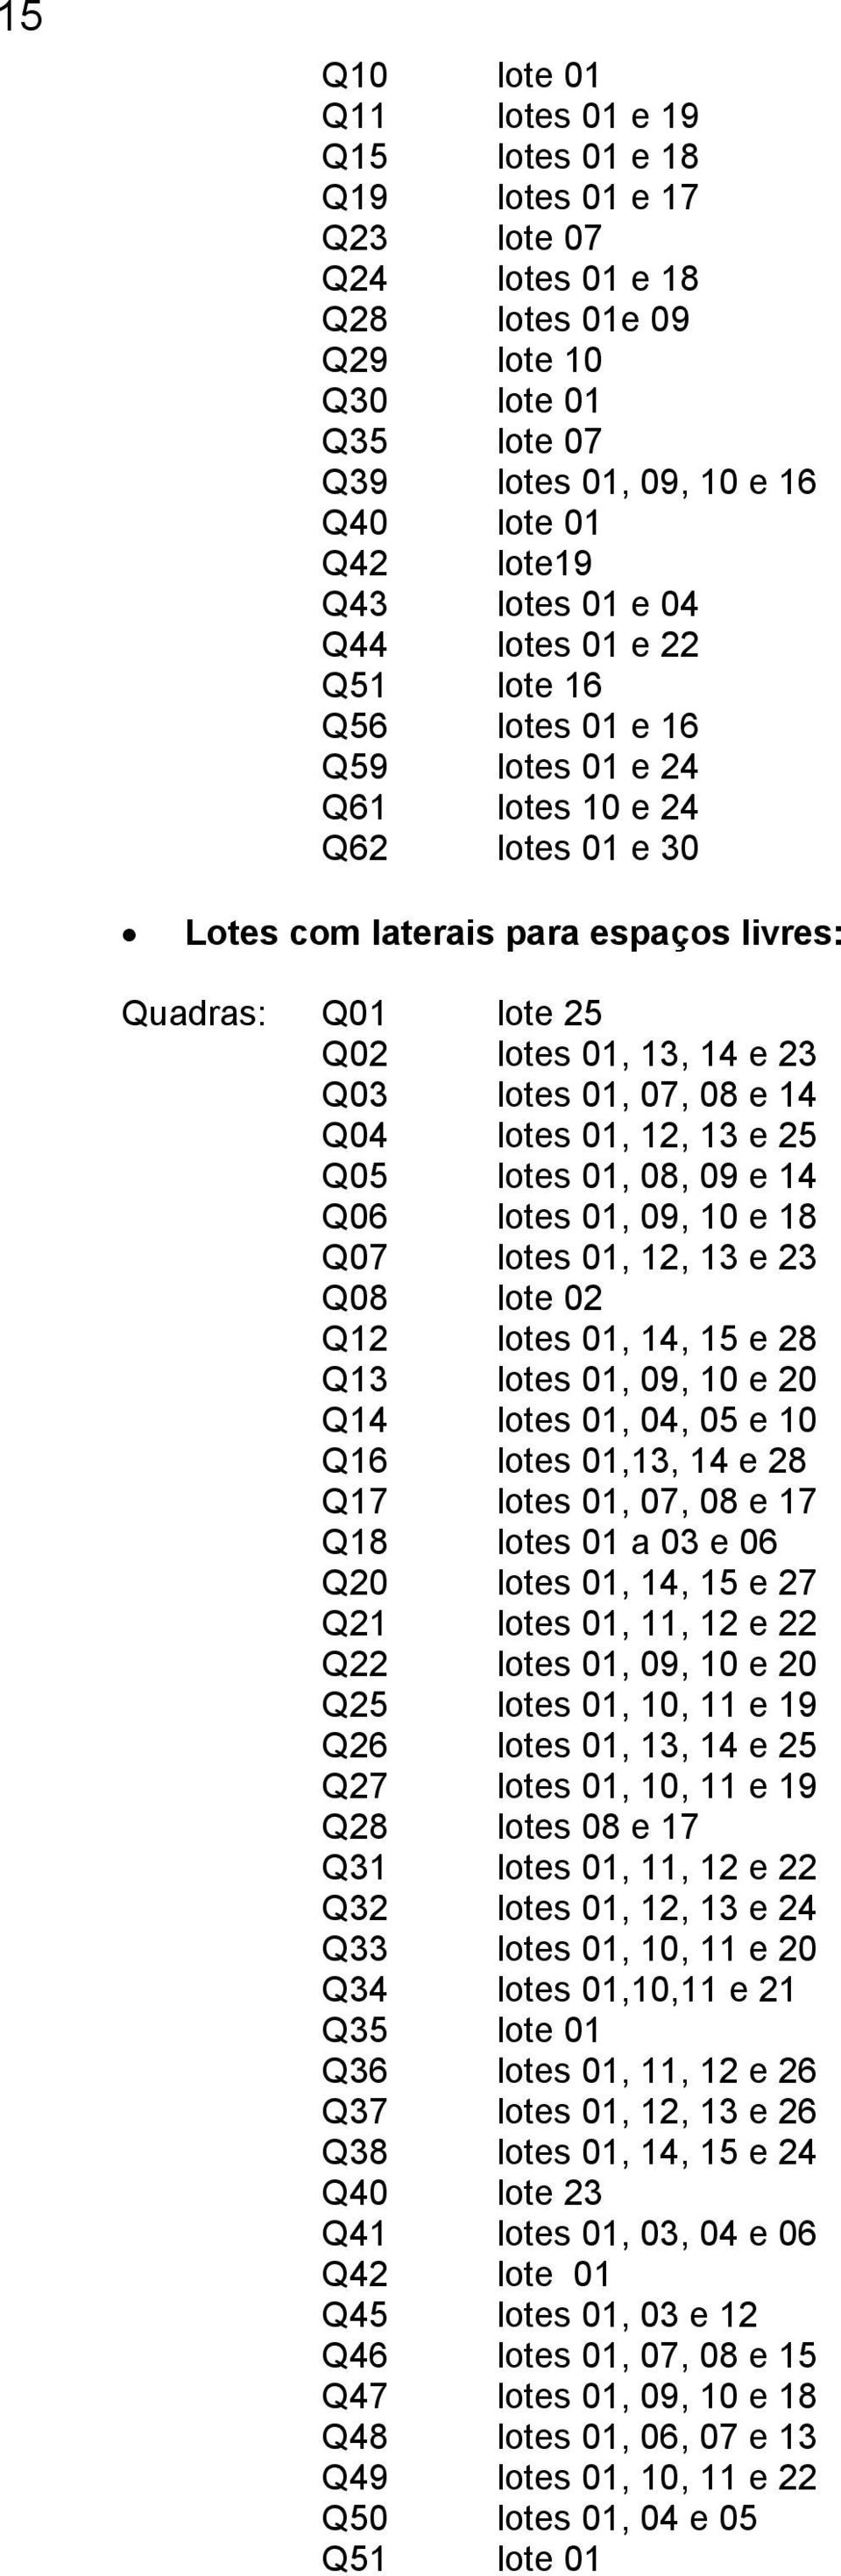 " Lotes com laterais para espaços livres: Quadras: Q01 lote 25 Q02 lotes 01, 13, 14 e 23 Q03 lotes 01, 07, 08 e 14 Q04 lotes 01, 12, 13 e 25 Q05 lotes 01, 08, 09 e 14 Q06 lotes 01, 09, 10 e 18 Q07